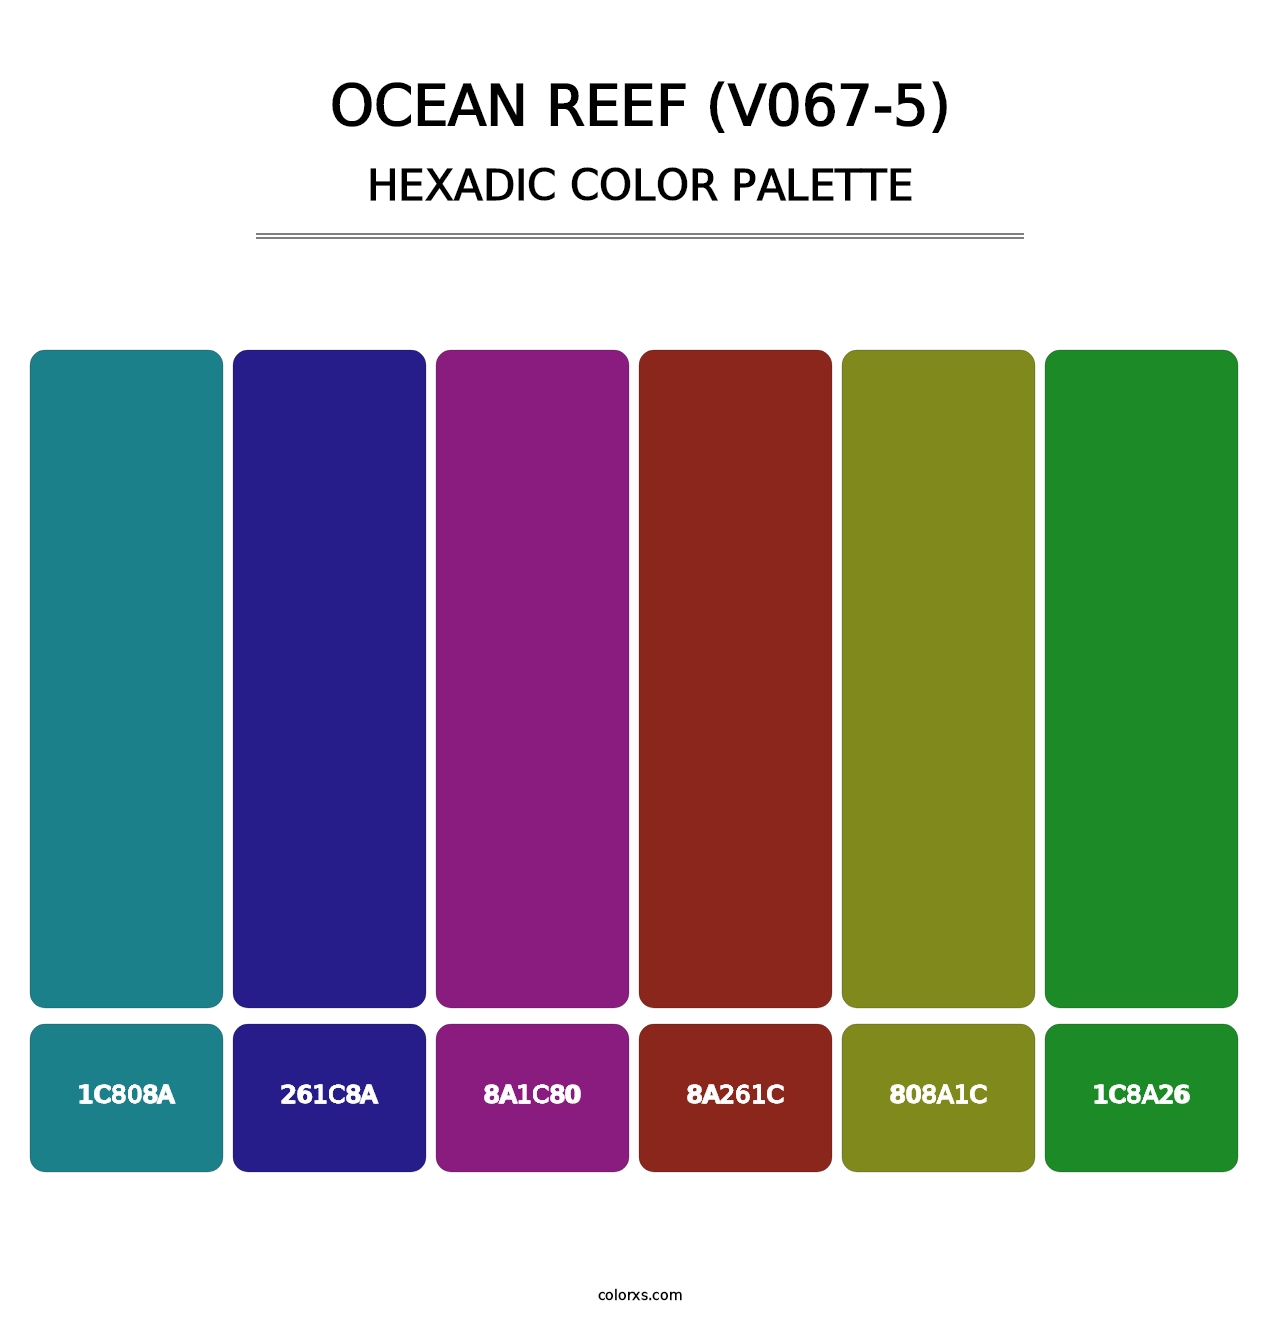 Ocean Reef (V067-5) - Hexadic Color Palette